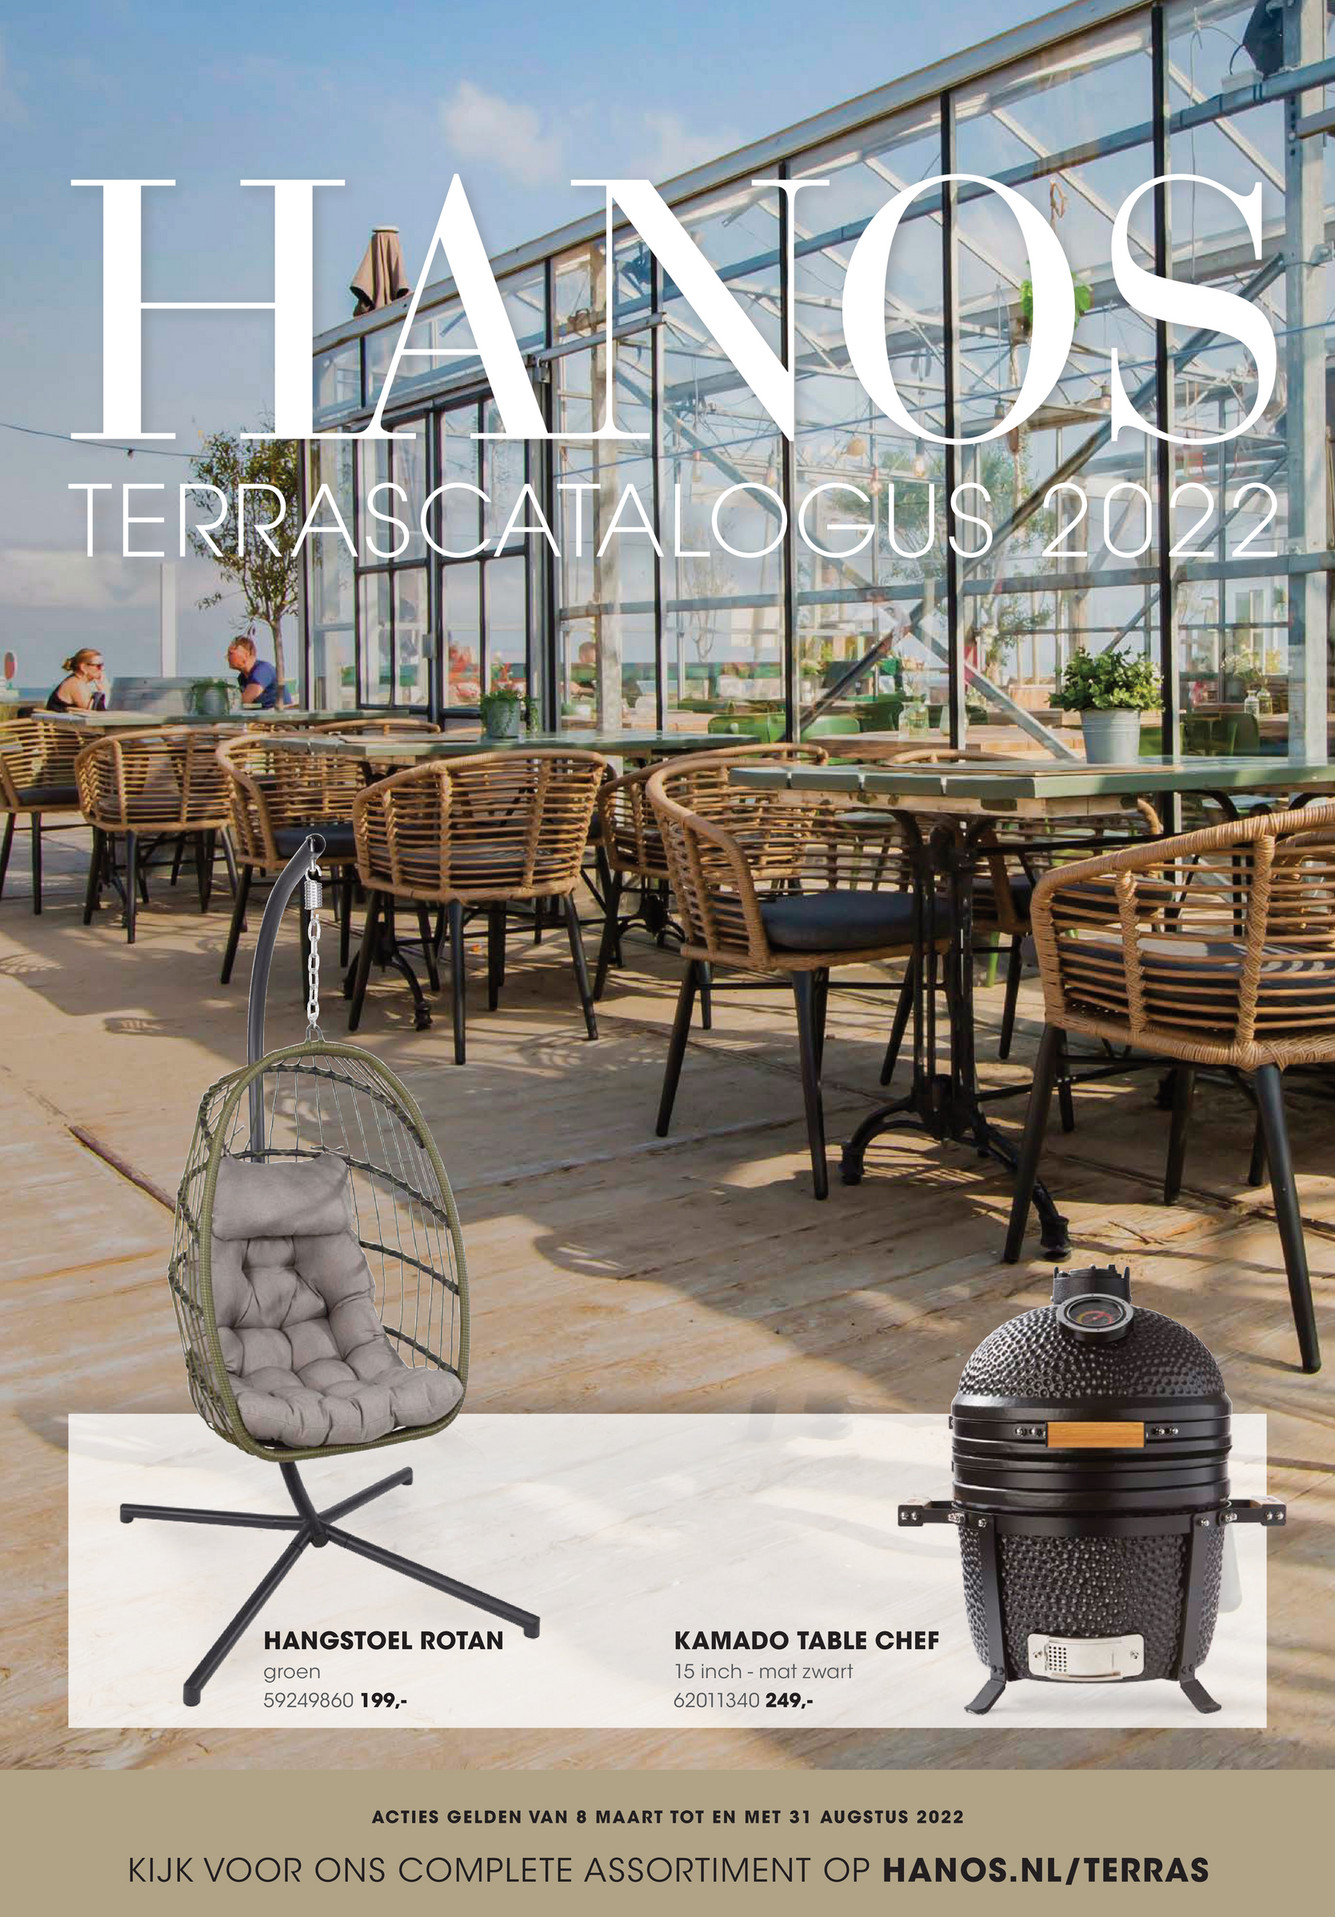 kalligrafie Activeren aankleden HANOS - Special HC06 terras magazine 2022 - Pagina 1